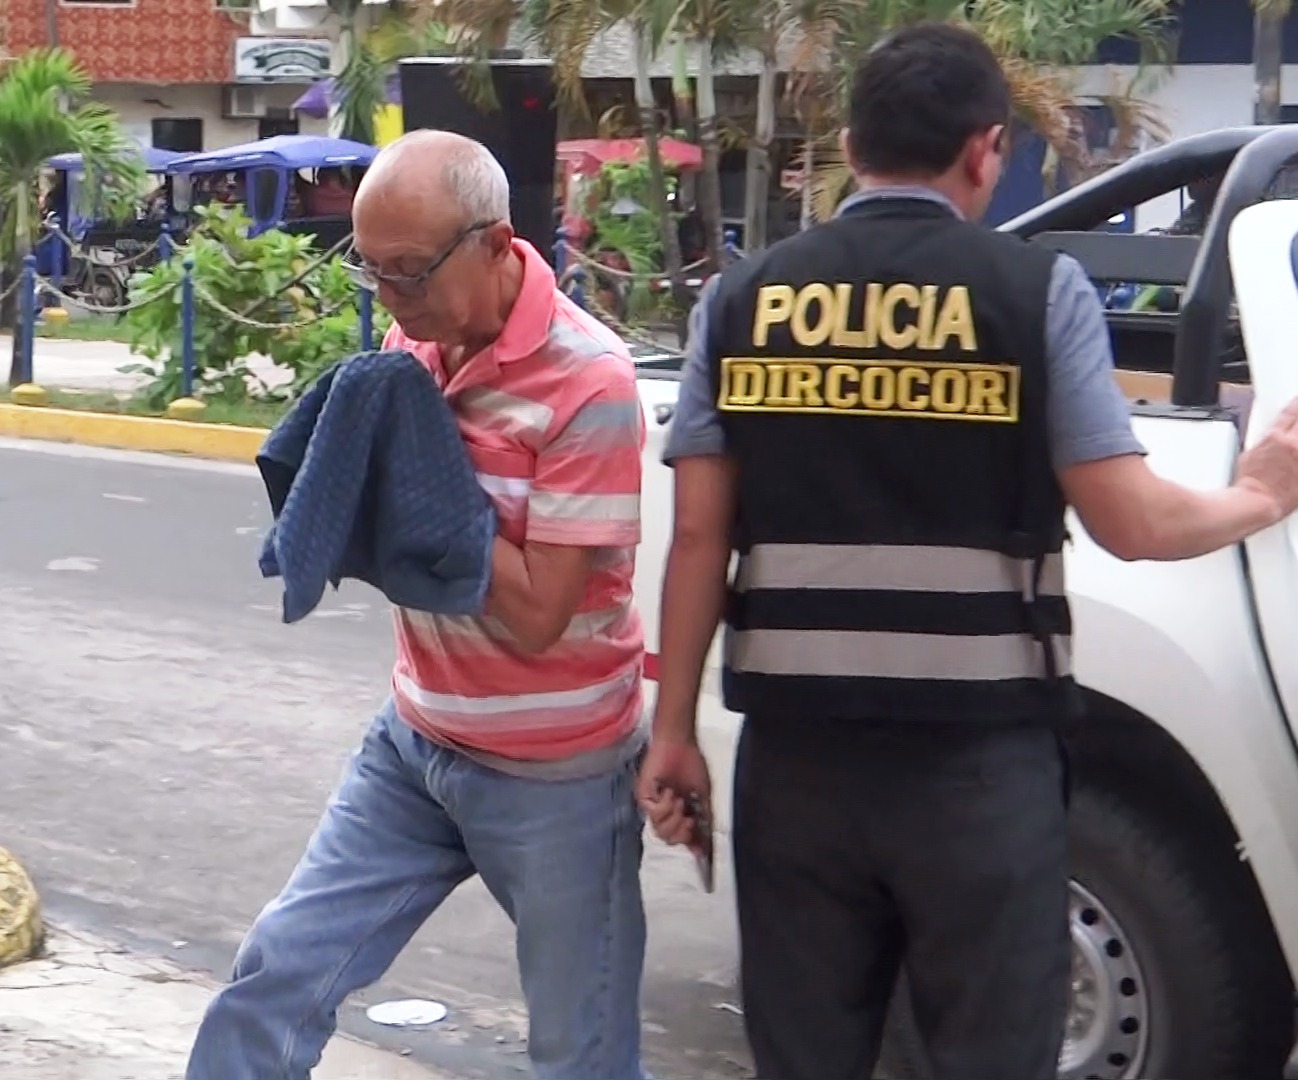 Policías de la Dircocor trasladaron al poder judicial al alcalde de Pebas